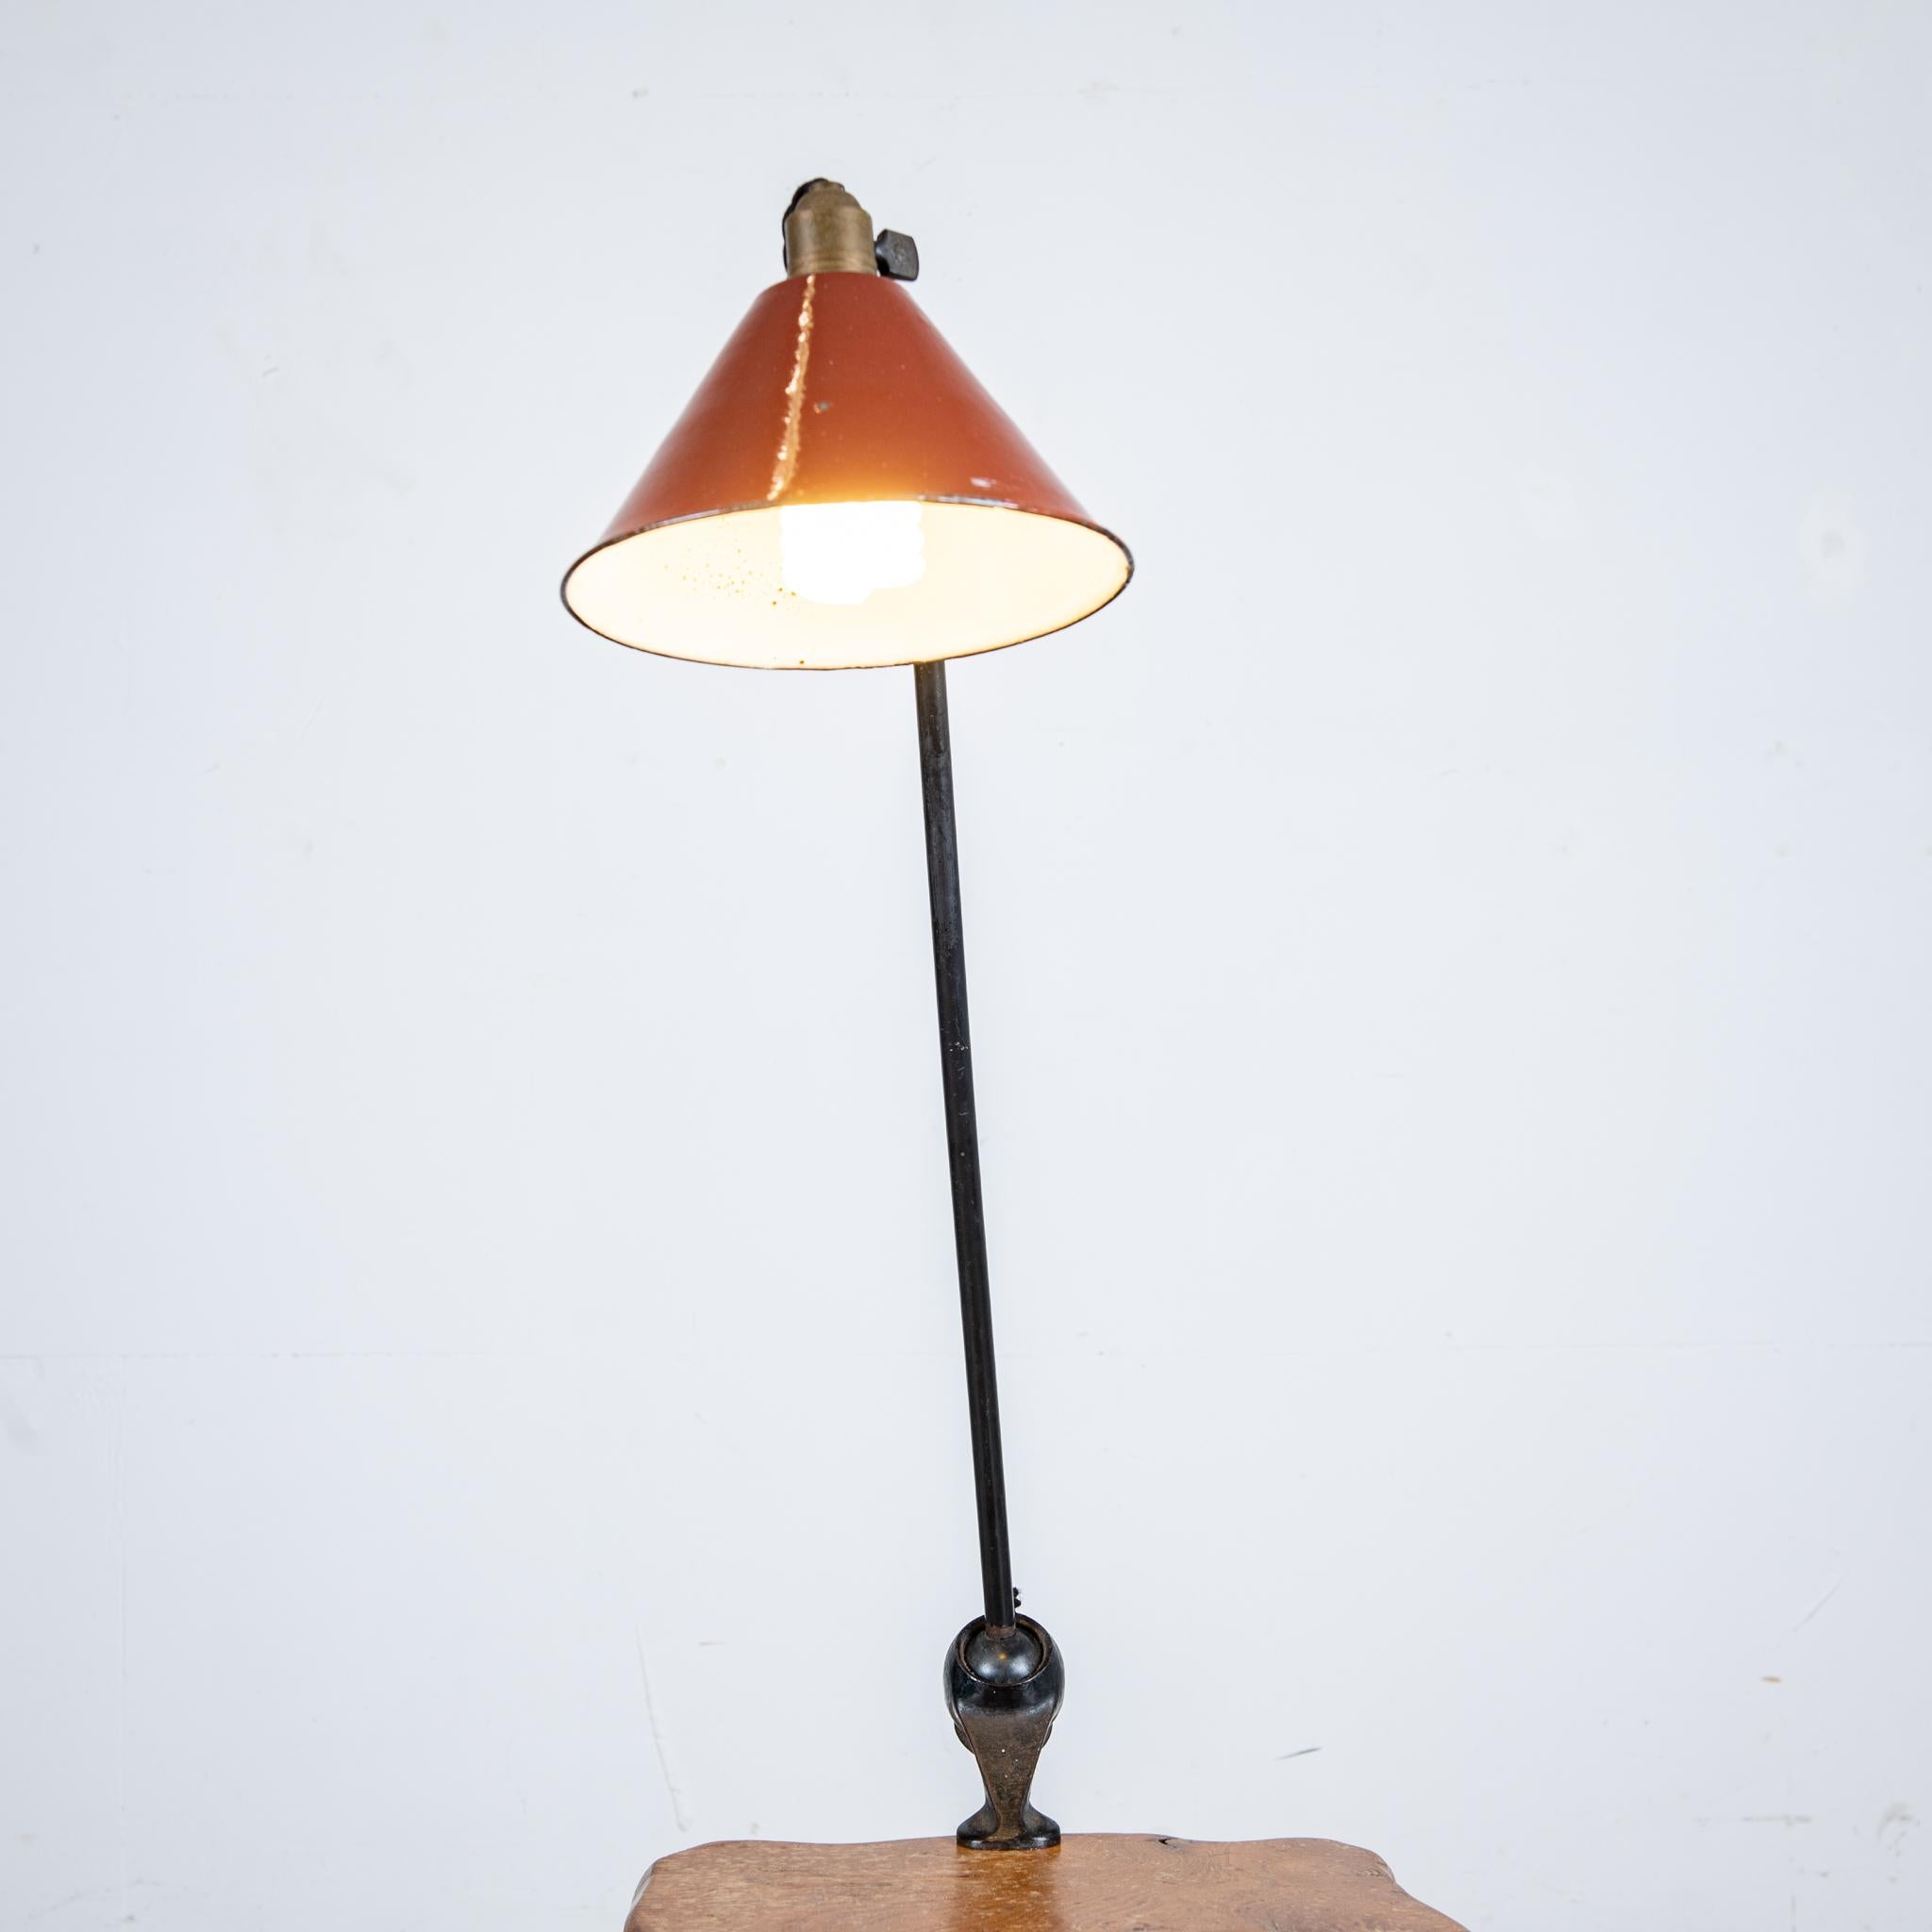 Lampe 201 Bernard-Albin Gras pour Ravel Clamart, 1921

Metal laqué rouge pour l'abat-jour dessinateur et acier pour les bras et rotule. le modèle 201 est articulé trois fois sur la rotule à la jonction des deux bras et au niveau de